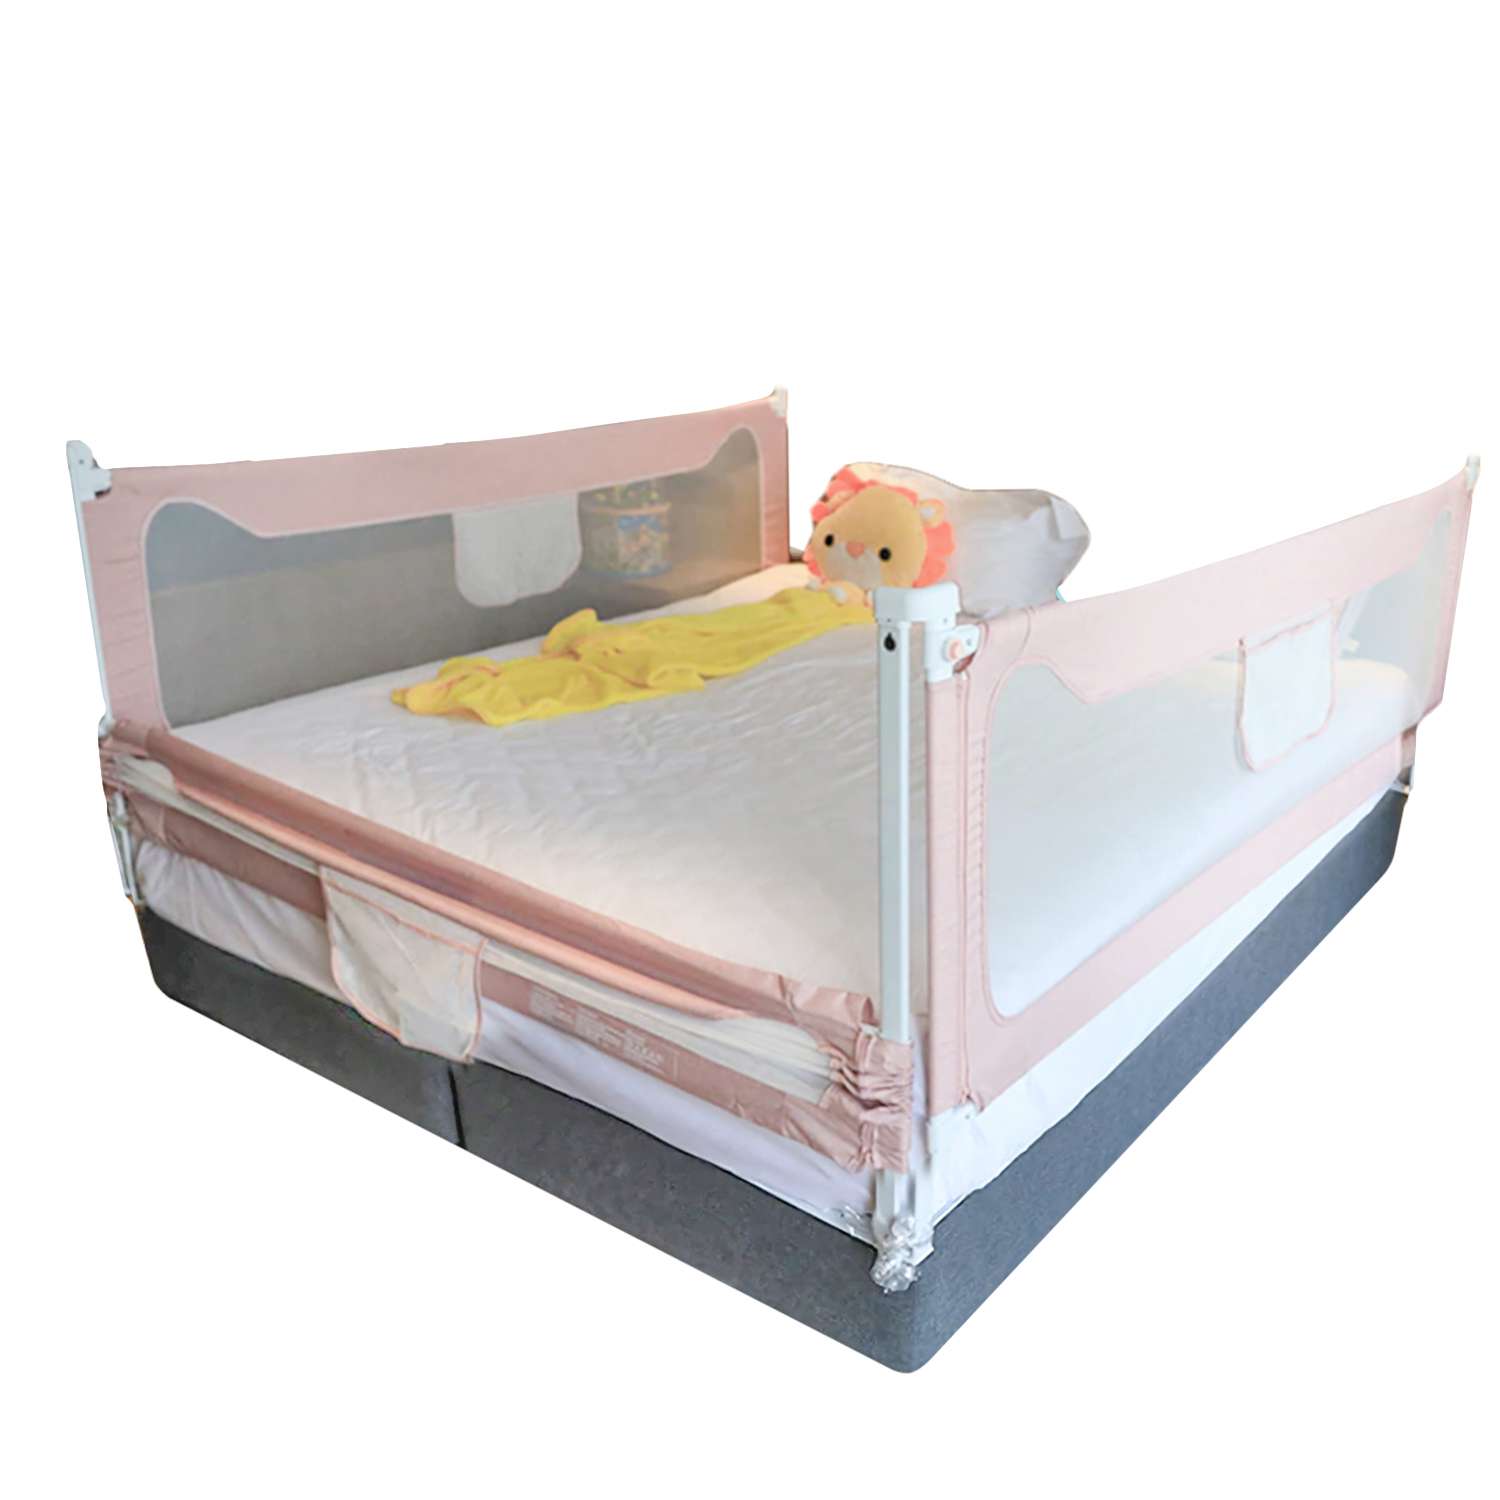 Барьер защитный для кровати CINLANKIDS 150х66 см - фото 6